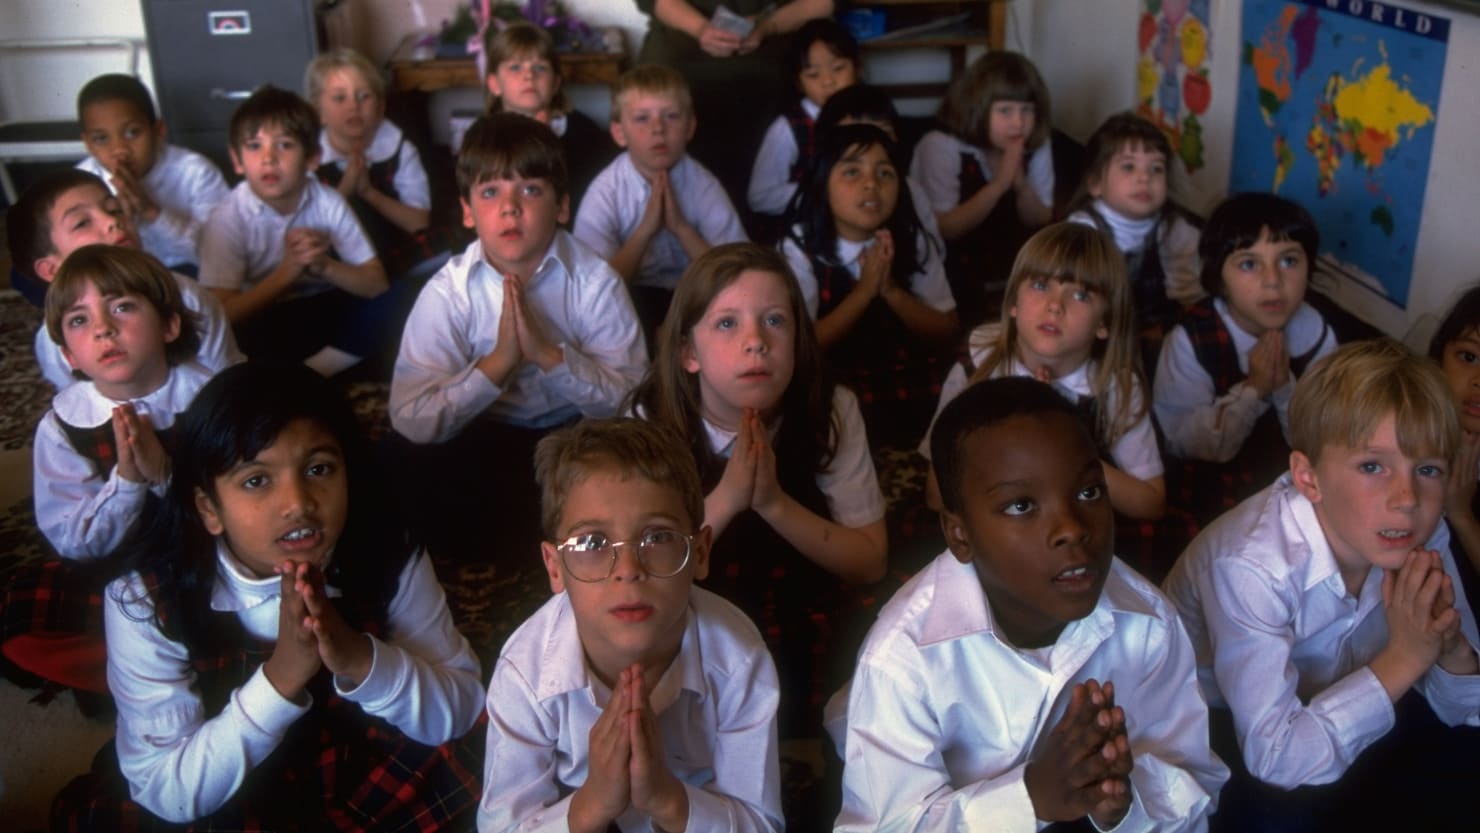 Los conservadores utilizarán la lucha por la oración en las escuelas para atacar la diversidad